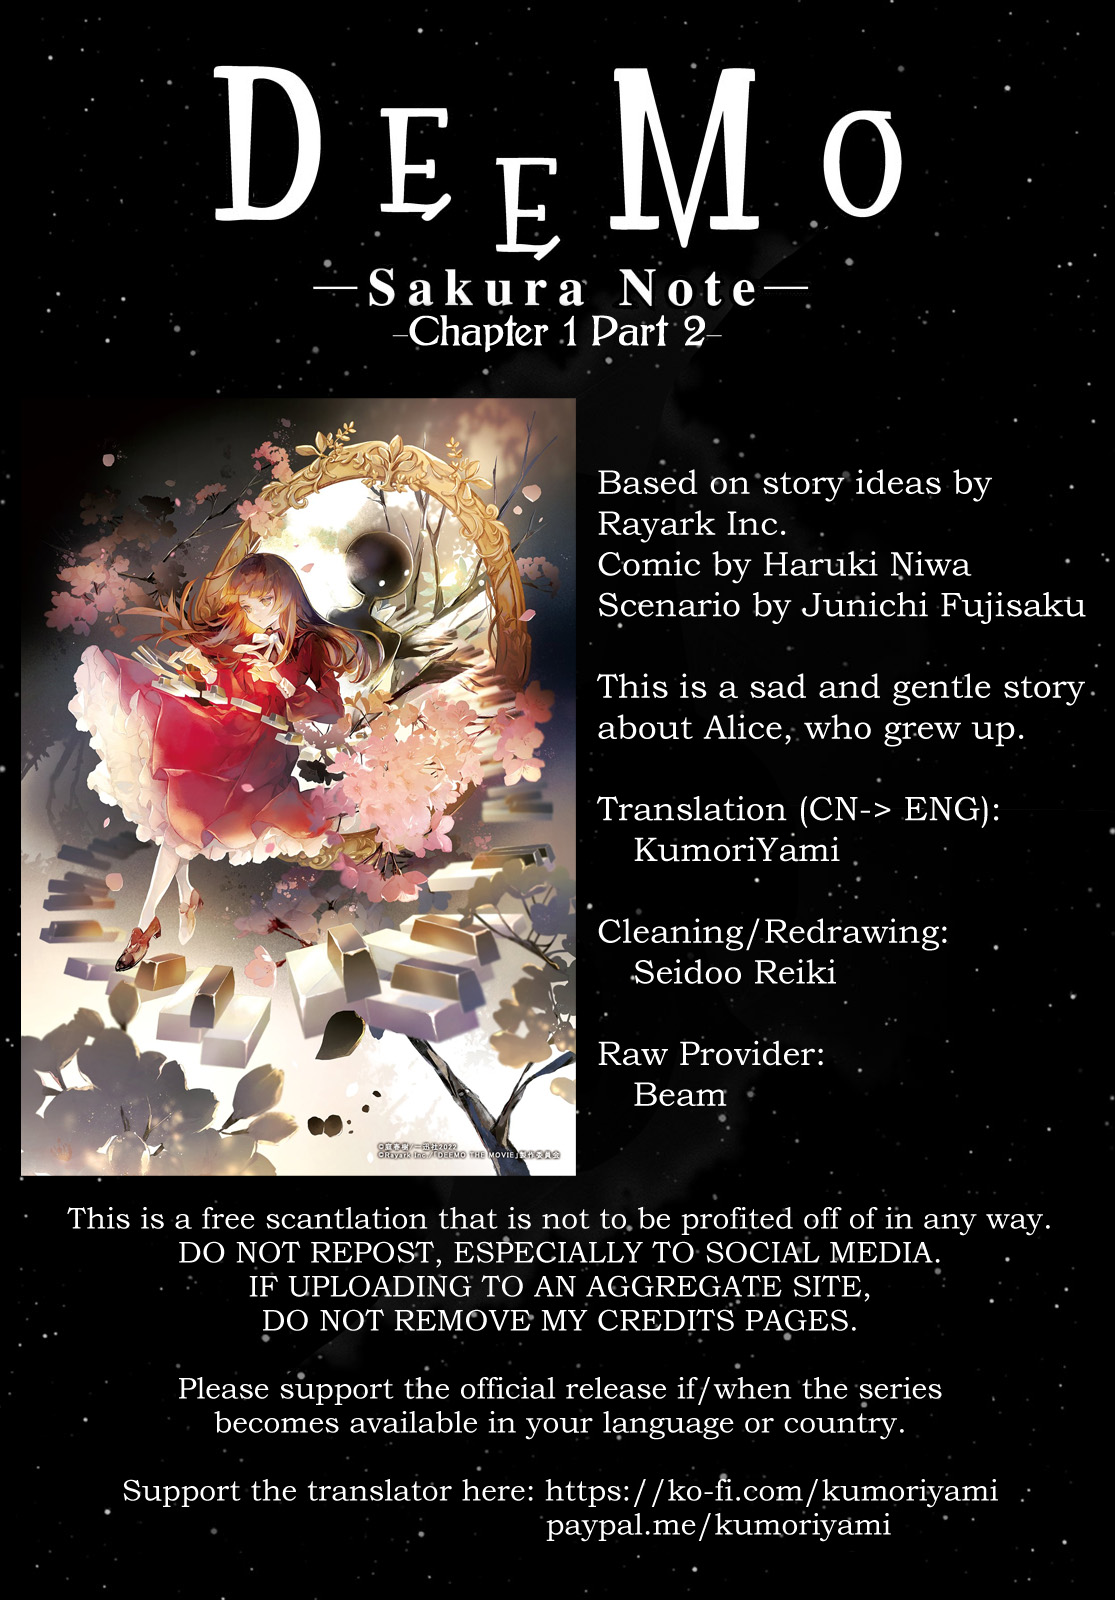 Deemo -Sakura Note- Chapter 1.5 #1